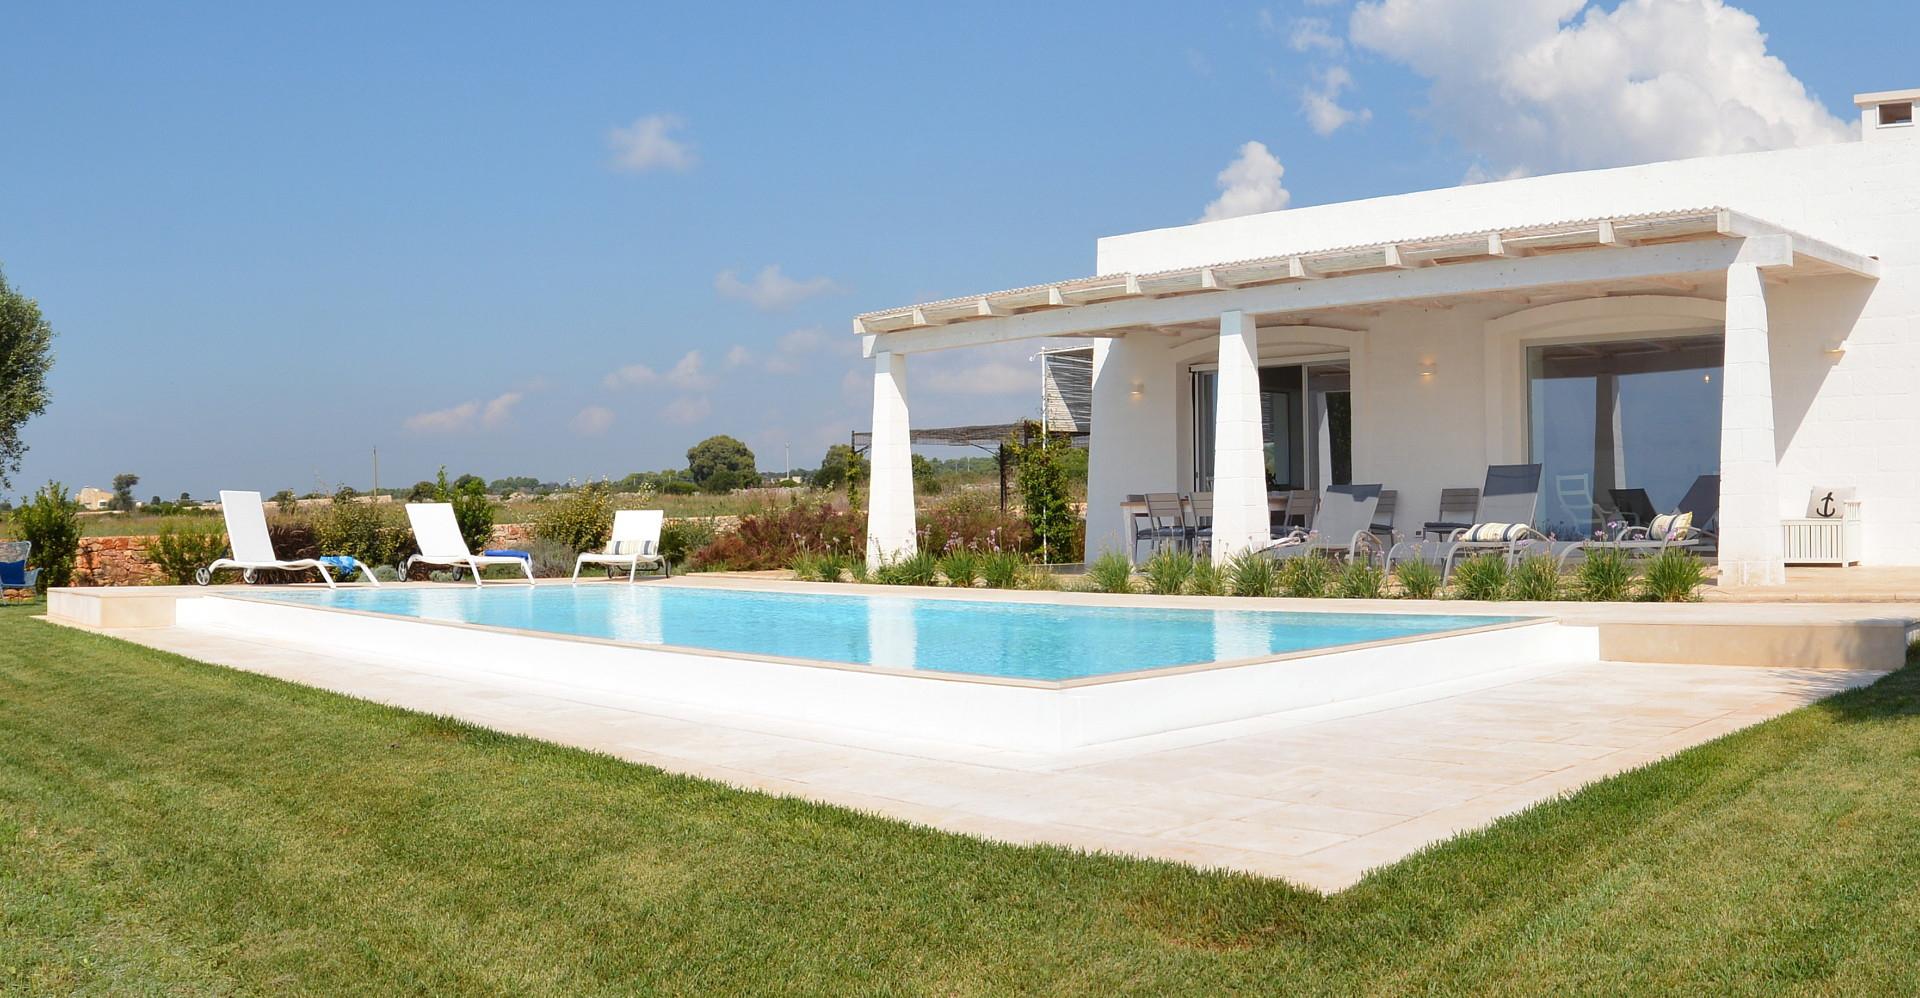 The villa- the pool, the garden 